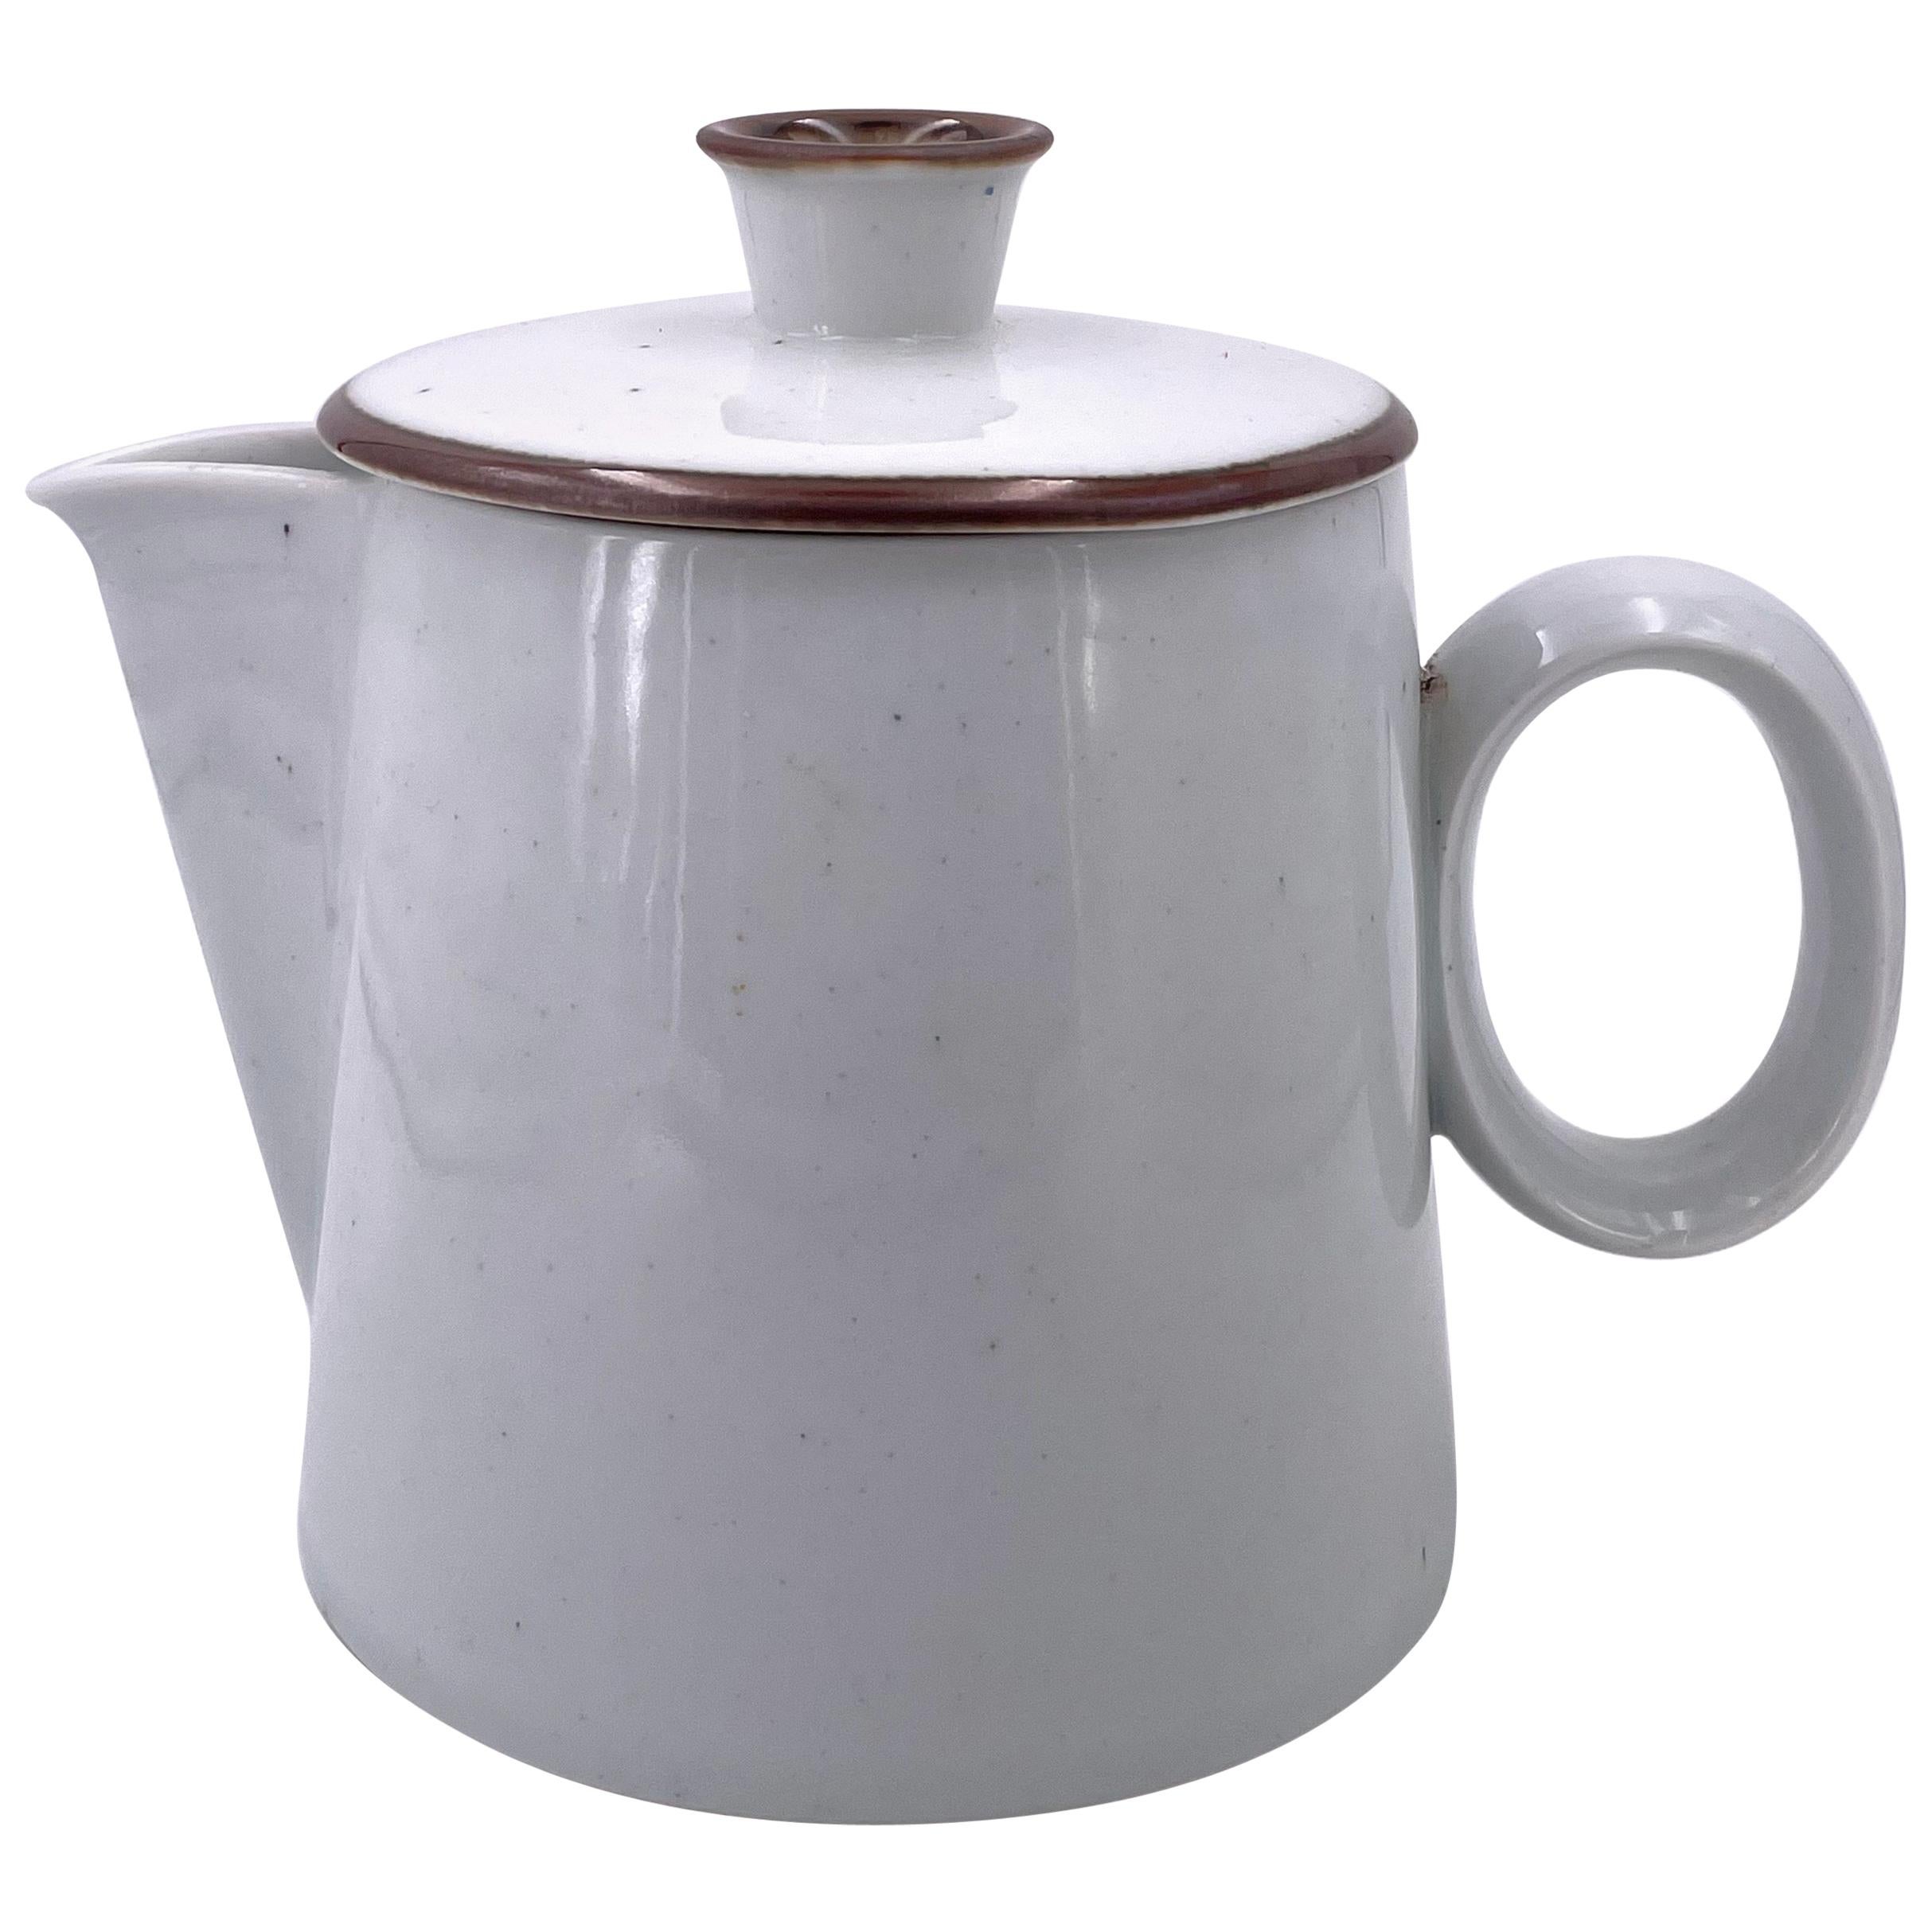 https://a.1stdibscdn.com/rare-white-porcelain-coffee-pot-by-dansk-designs-denmark-for-sale/1121189/f_227277521614700959168/22727752_master.jpg